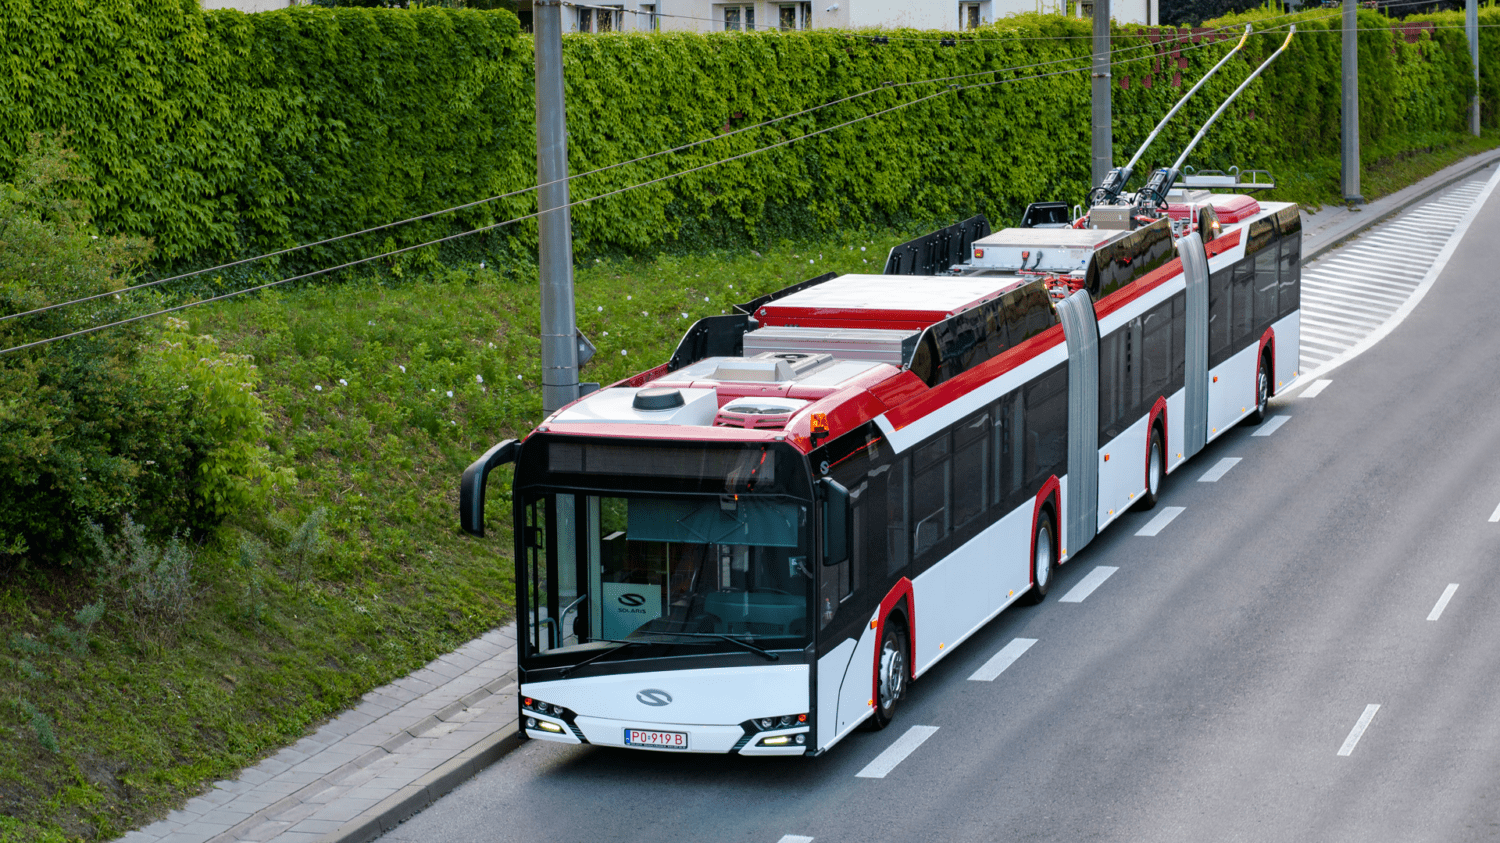 Marburg by rád do svých ulic zavedl i tříčlánkové trolejbusy. Na snímku je původní provedení prototypu trolejbusu Solaris Trollino 24 během homologačních testů. (foto: Solaris Bus & Coach)